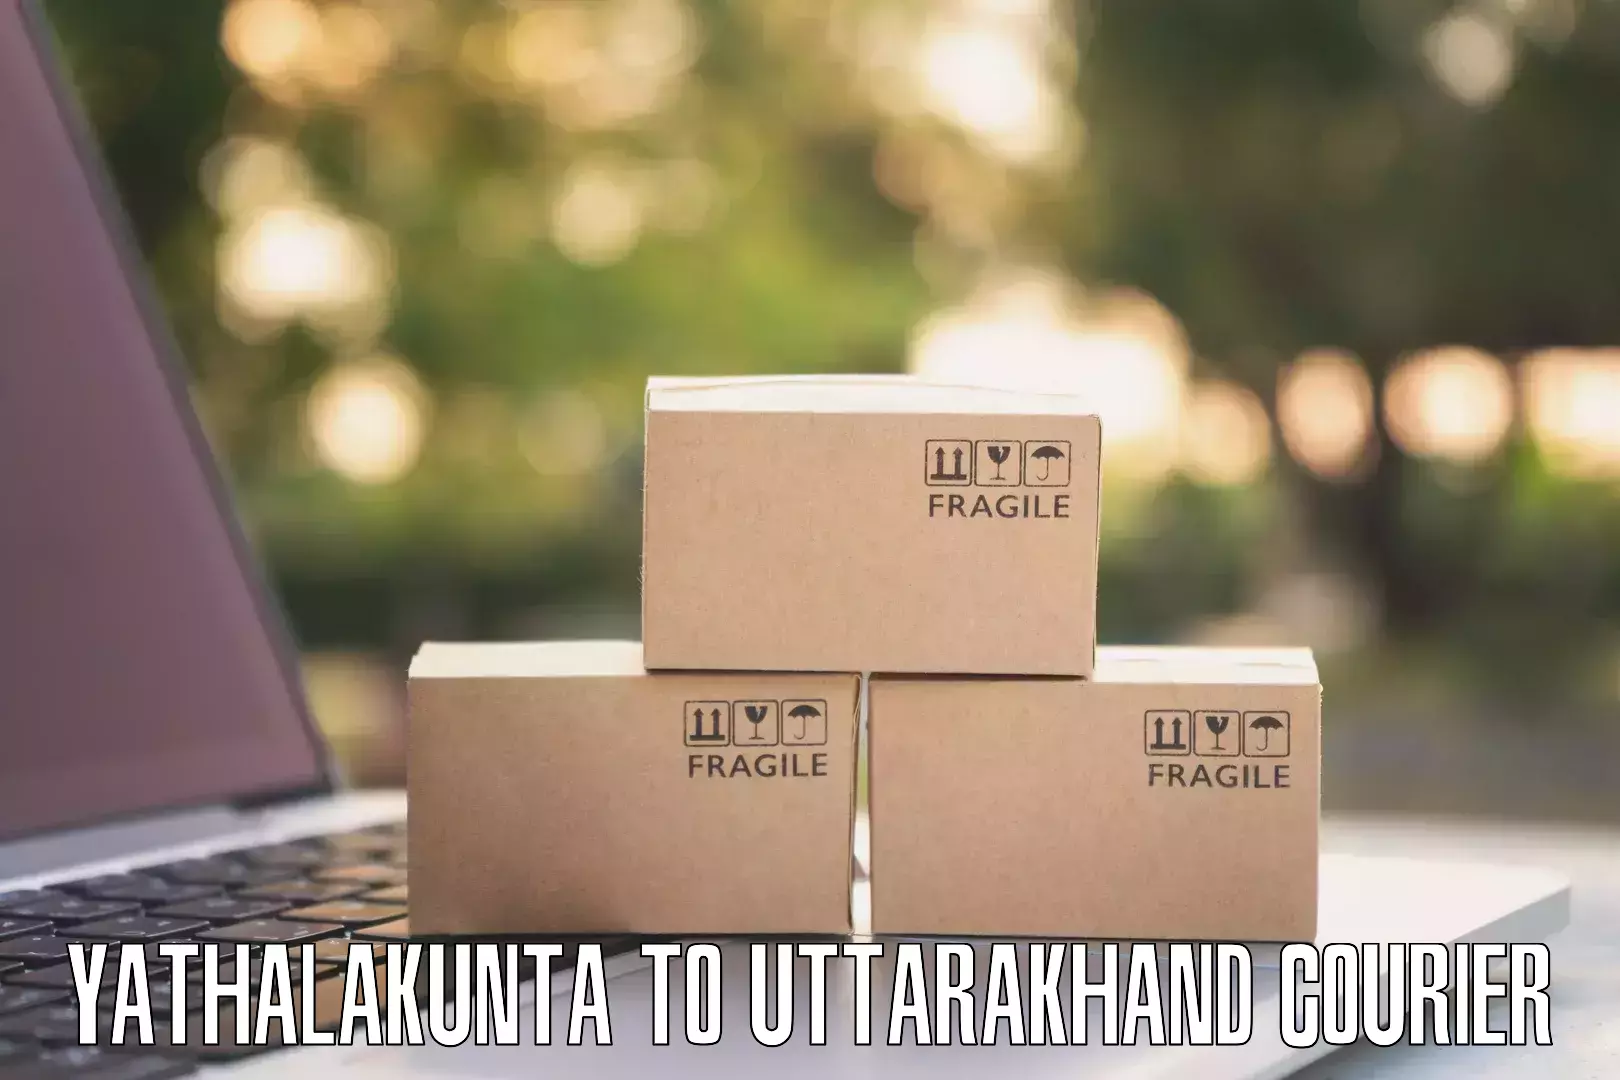 Online package tracking Yathalakunta to Doiwala